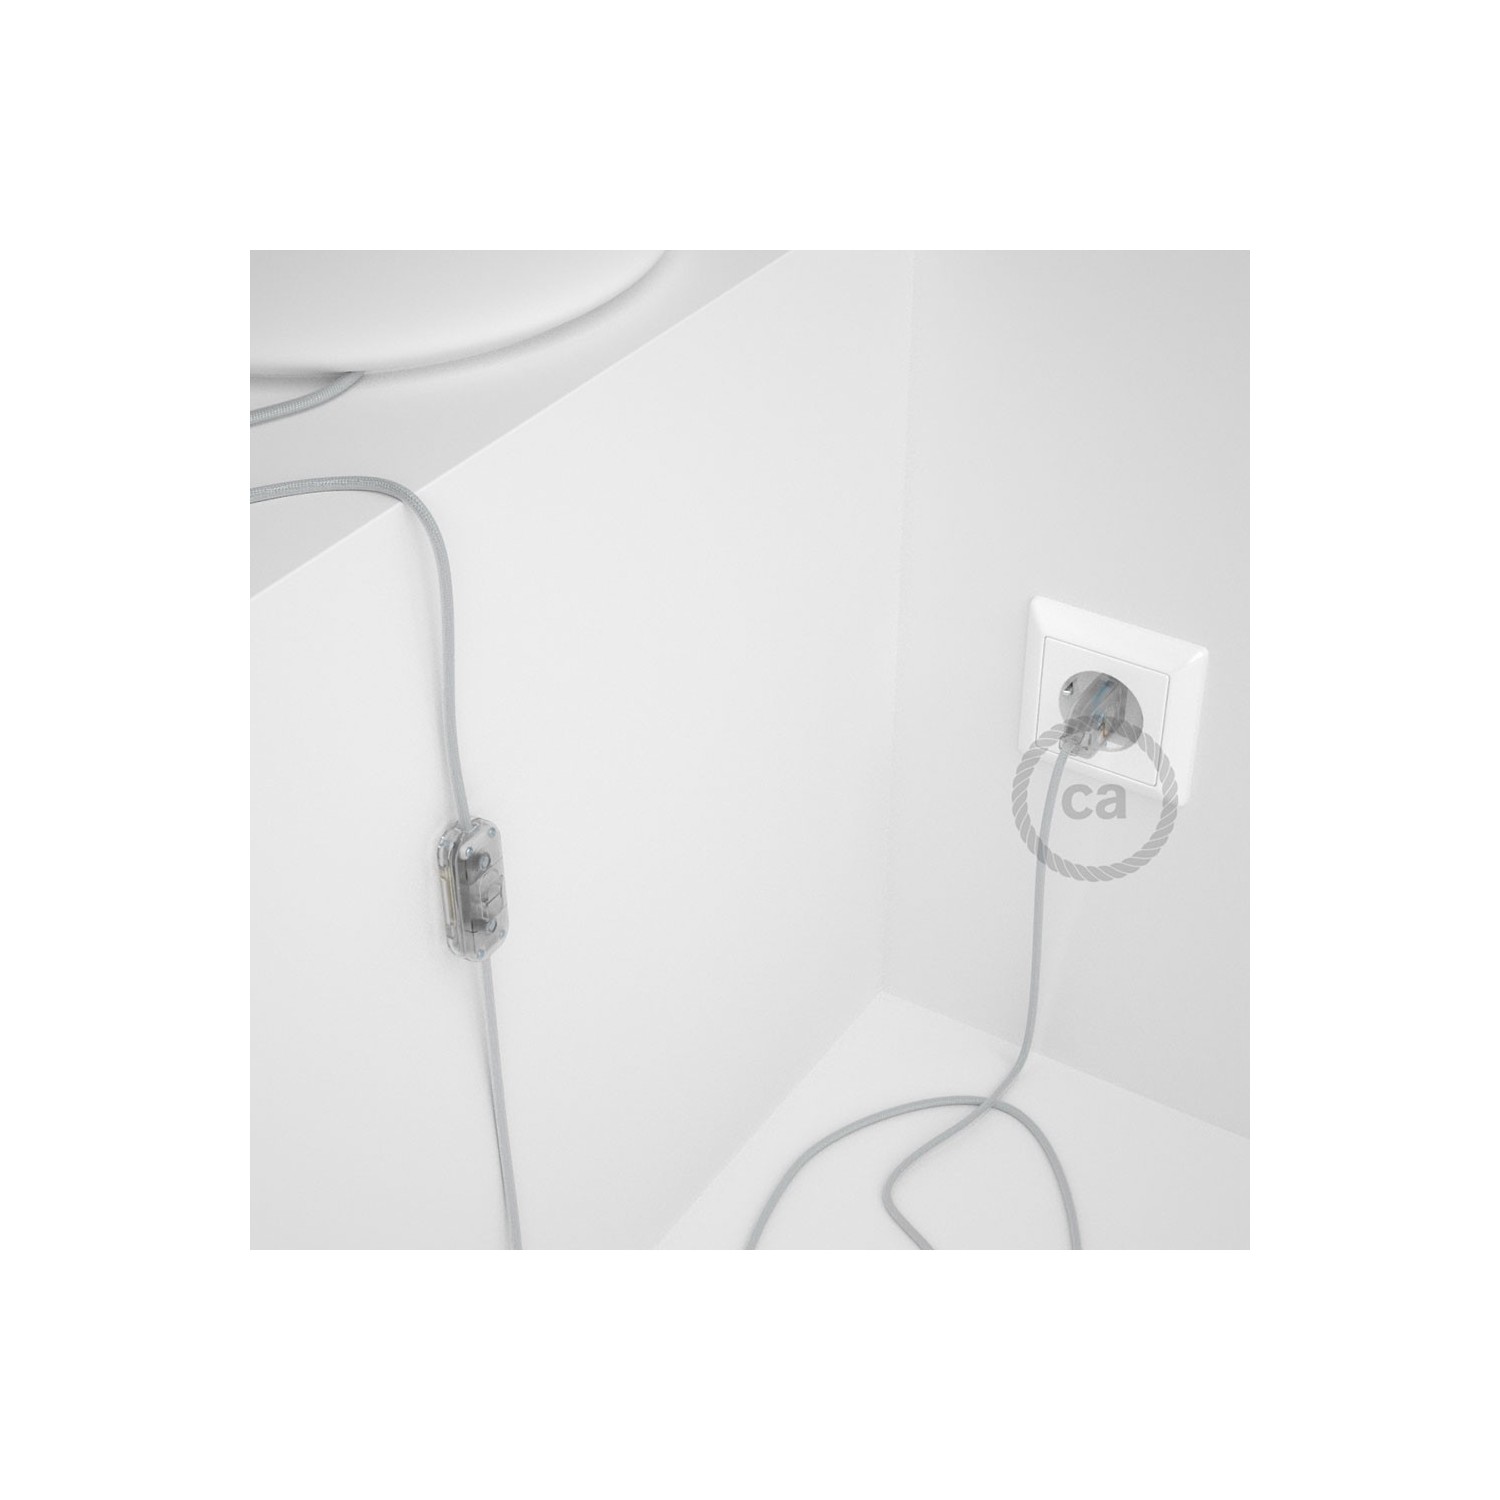 Cableado para lámpara, cable RM02 Efecto Seda Plateado 1,8m. Elige tu el color de la clavija y del interruptor!